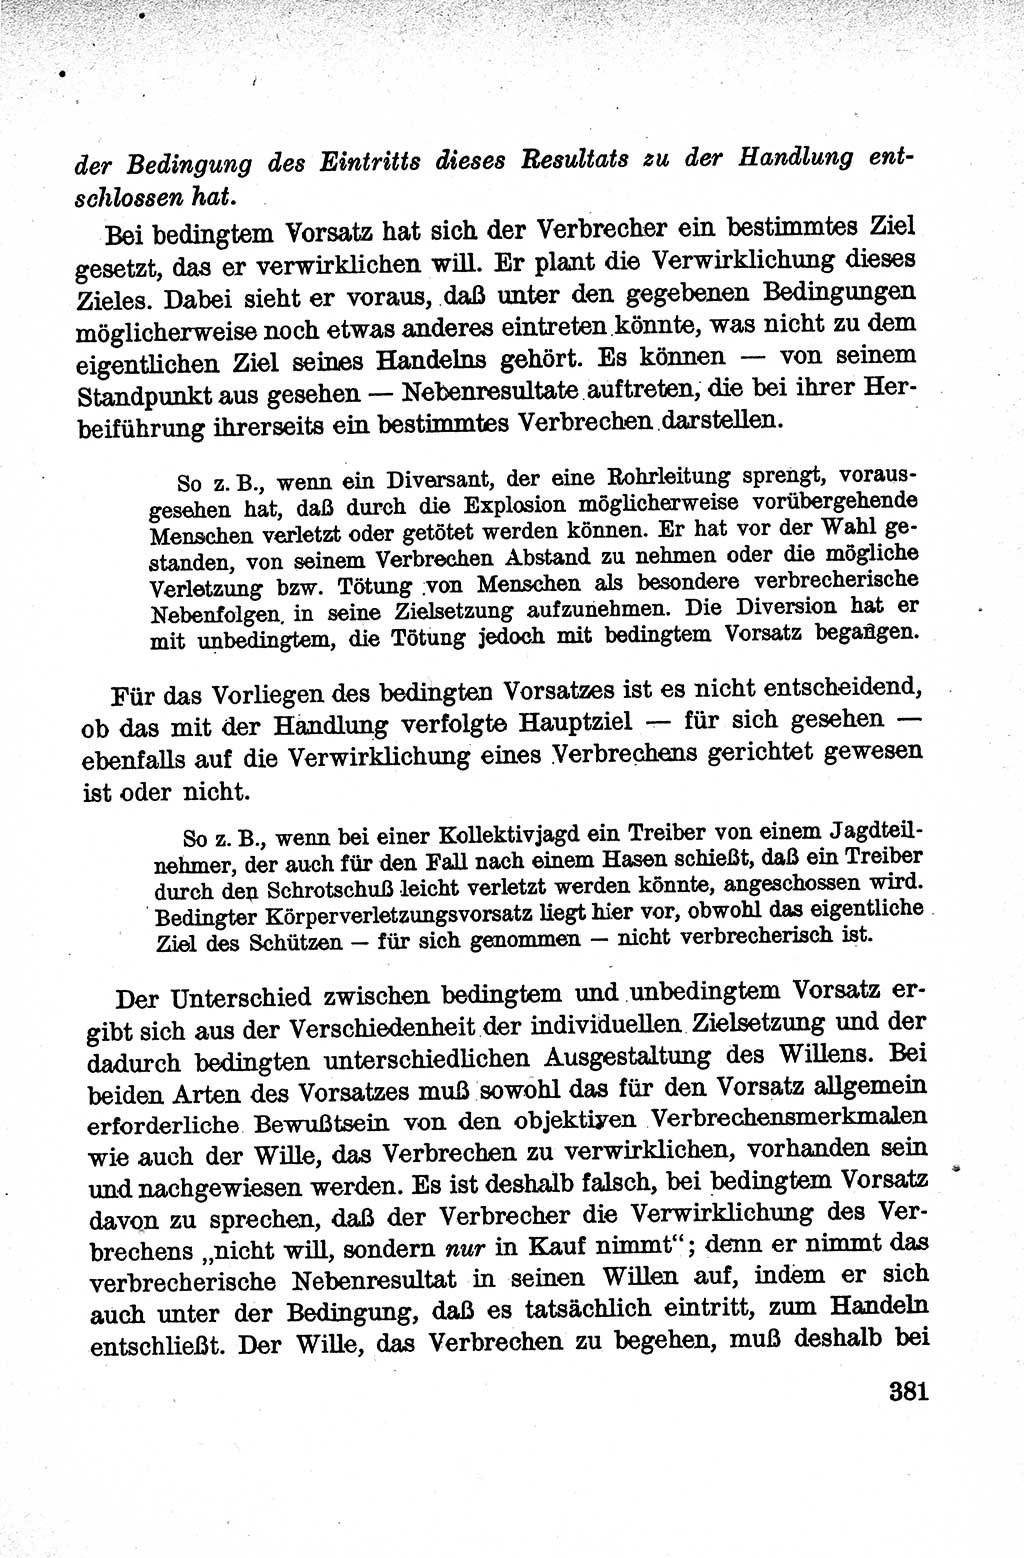 Lehrbuch des Strafrechts der Deutschen Demokratischen Republik (DDR), Allgemeiner Teil 1959, Seite 381 (Lb. Strafr. DDR AT 1959, S. 381)